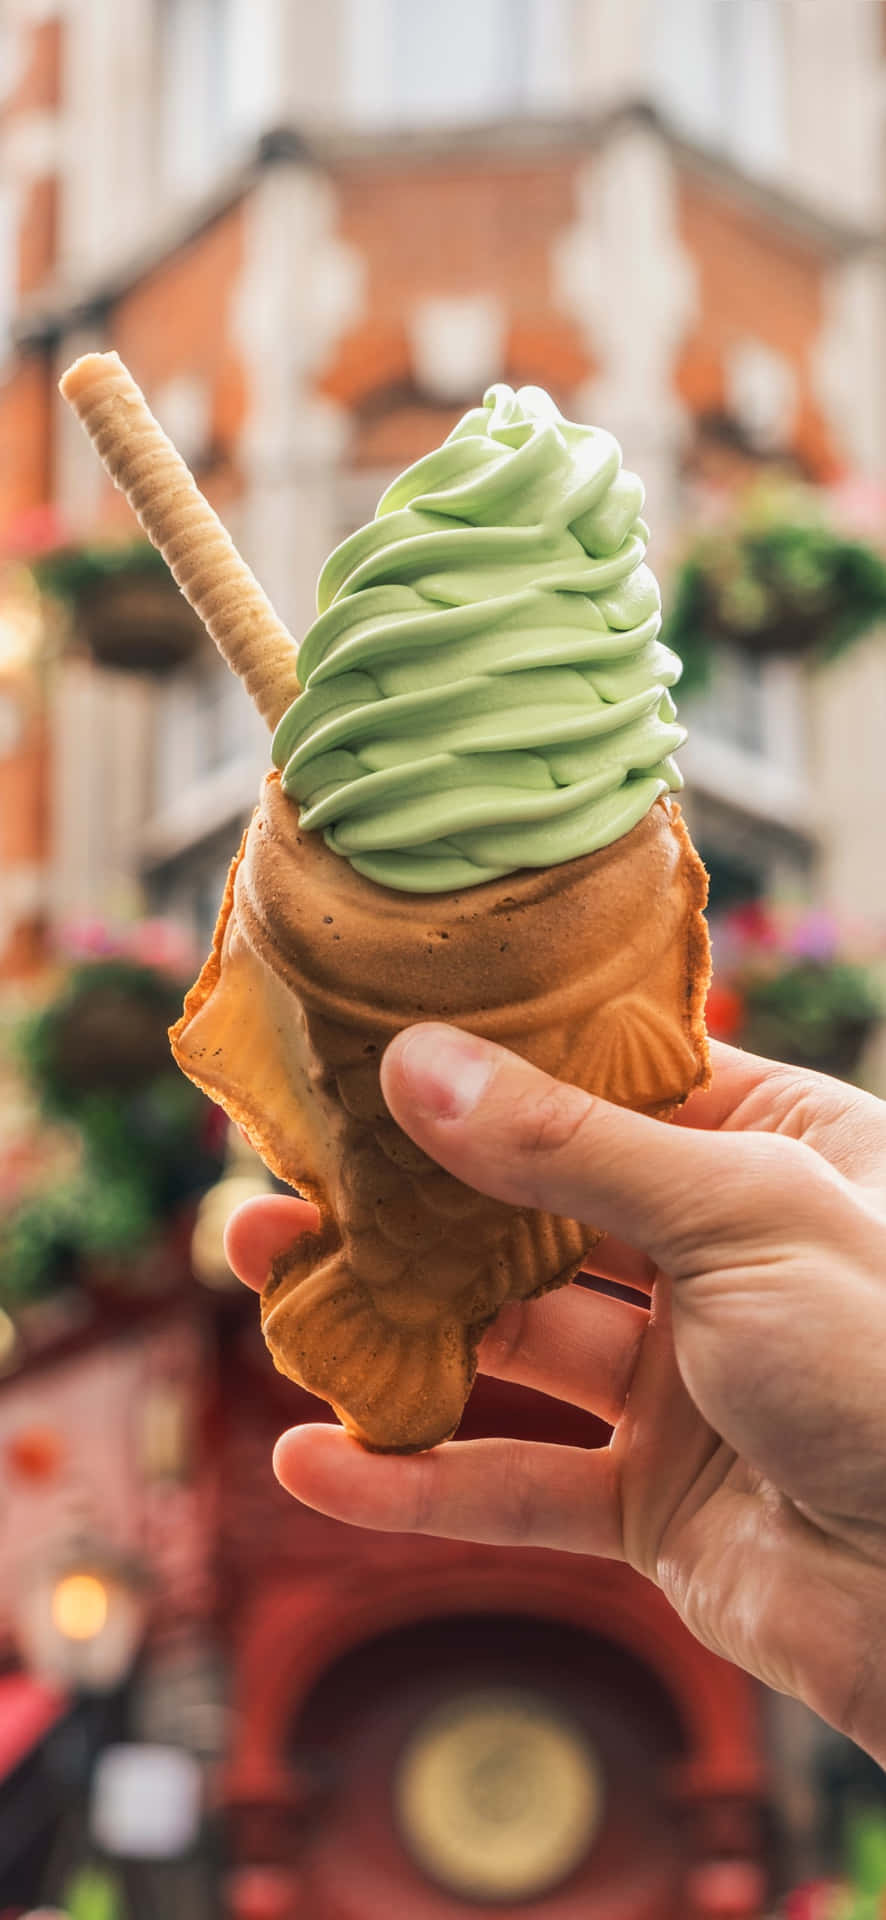 Green Tea Ice Cream Fish Cone Wallpaper